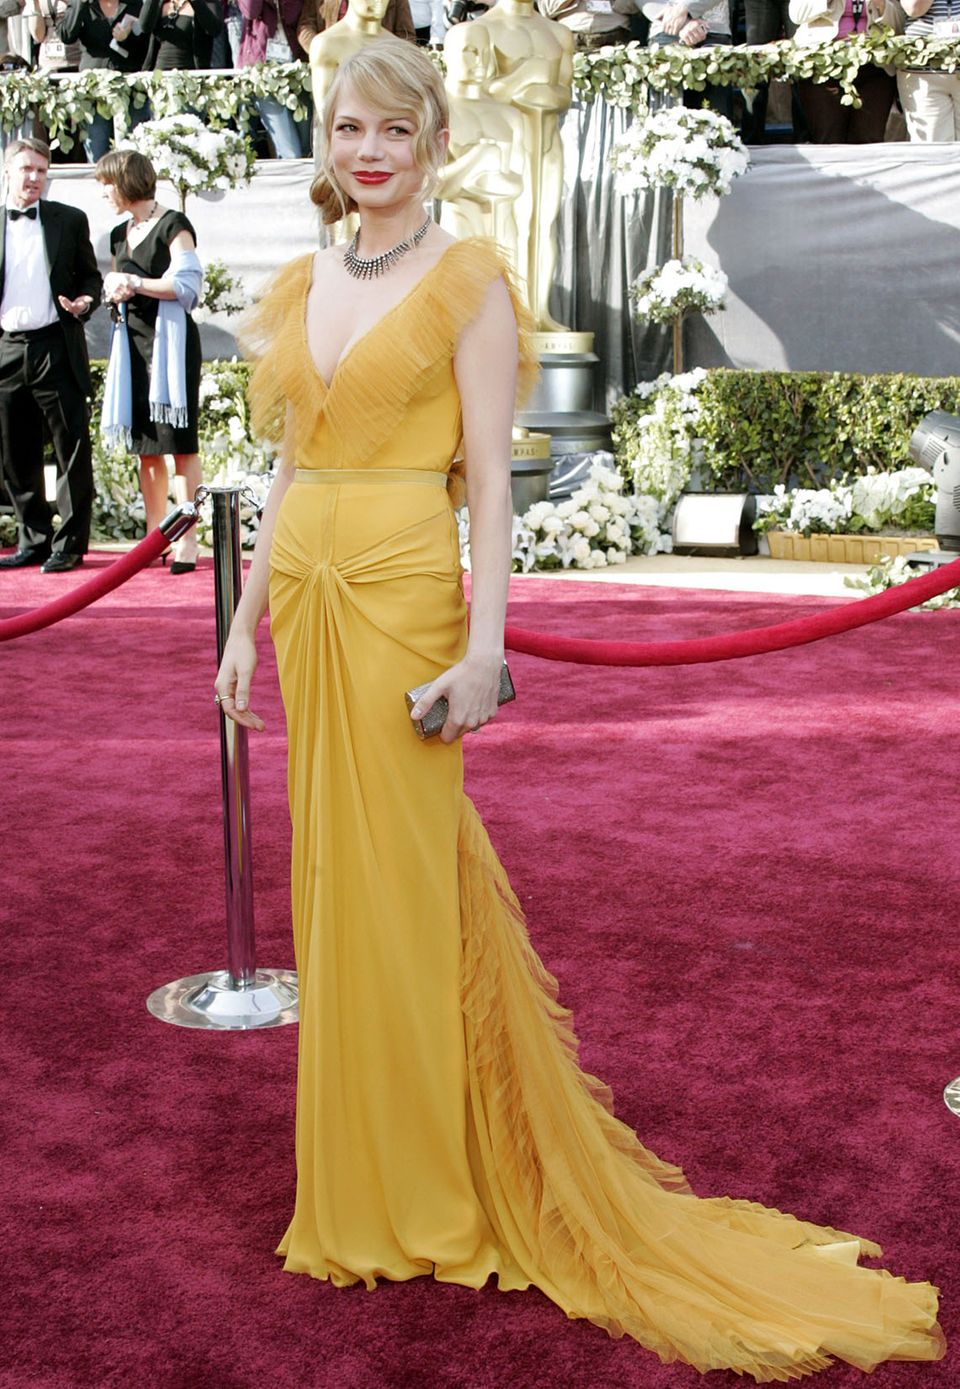 Bei ihrem Gang über den roten Teppich in 2006 machte Michelle Williams der Oscar-Statue Konkurrenz, als sie in einem gelbgoldenen Kleid von Vera Wang bei den Academy Awards erschien. Mit einem satten Rotton auf den Lippen rundete sie den Preis-verdächtigen Look hervorragend ab.